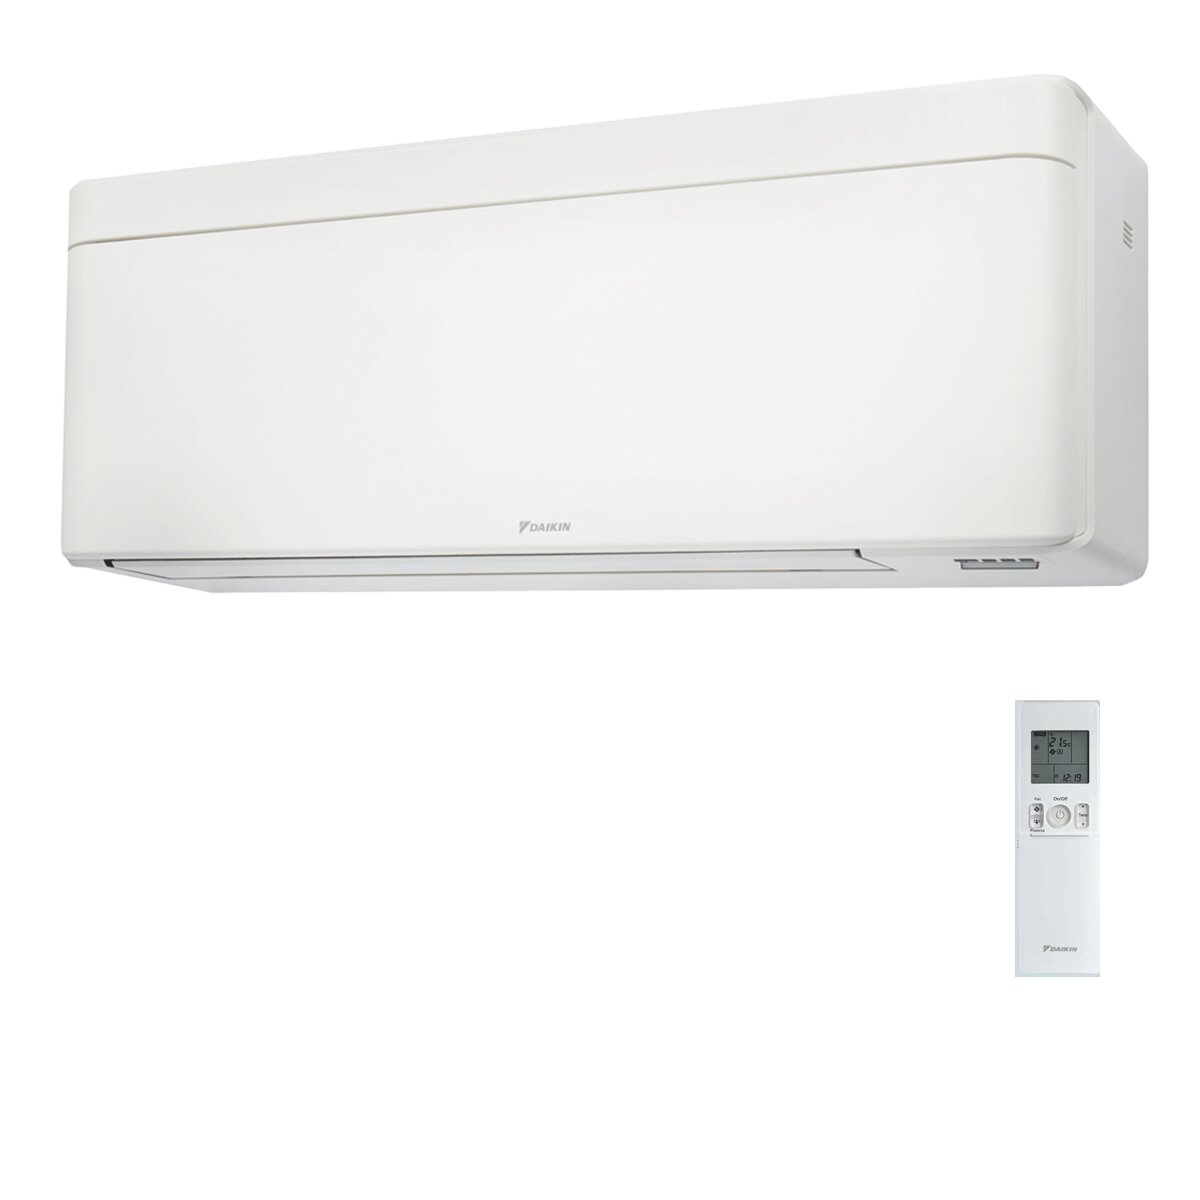 Daikin Stylish White trial split air conditioner 9000+12000+18000 BTU inverter A++ wifi external unit 6.8 kW